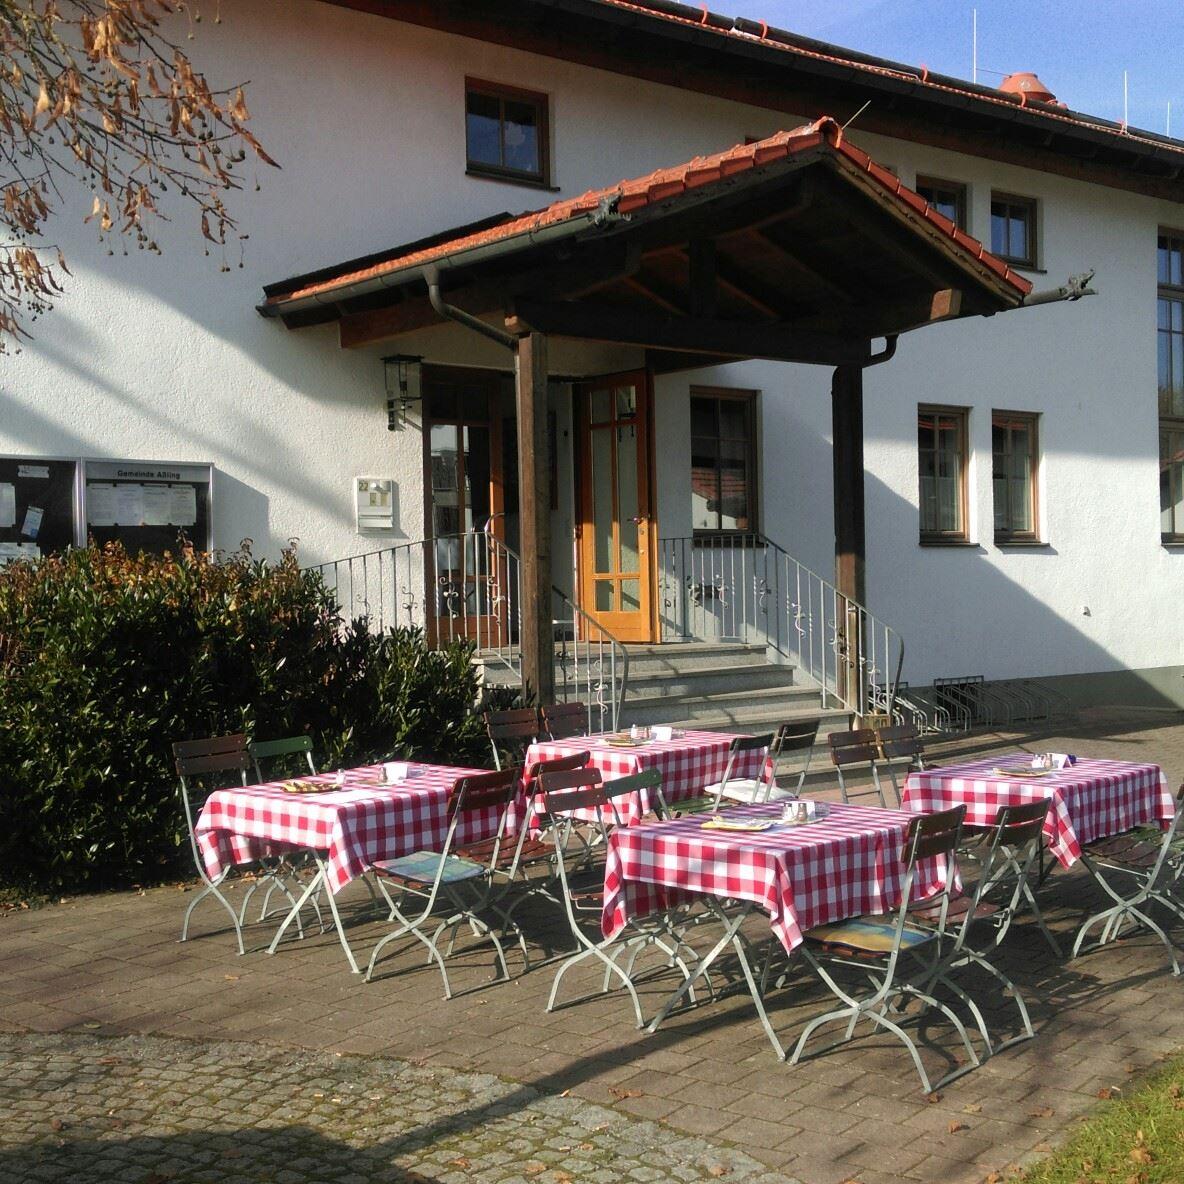 Restaurant "Dorfgasthaus Lorenzenberg" in  Aßling